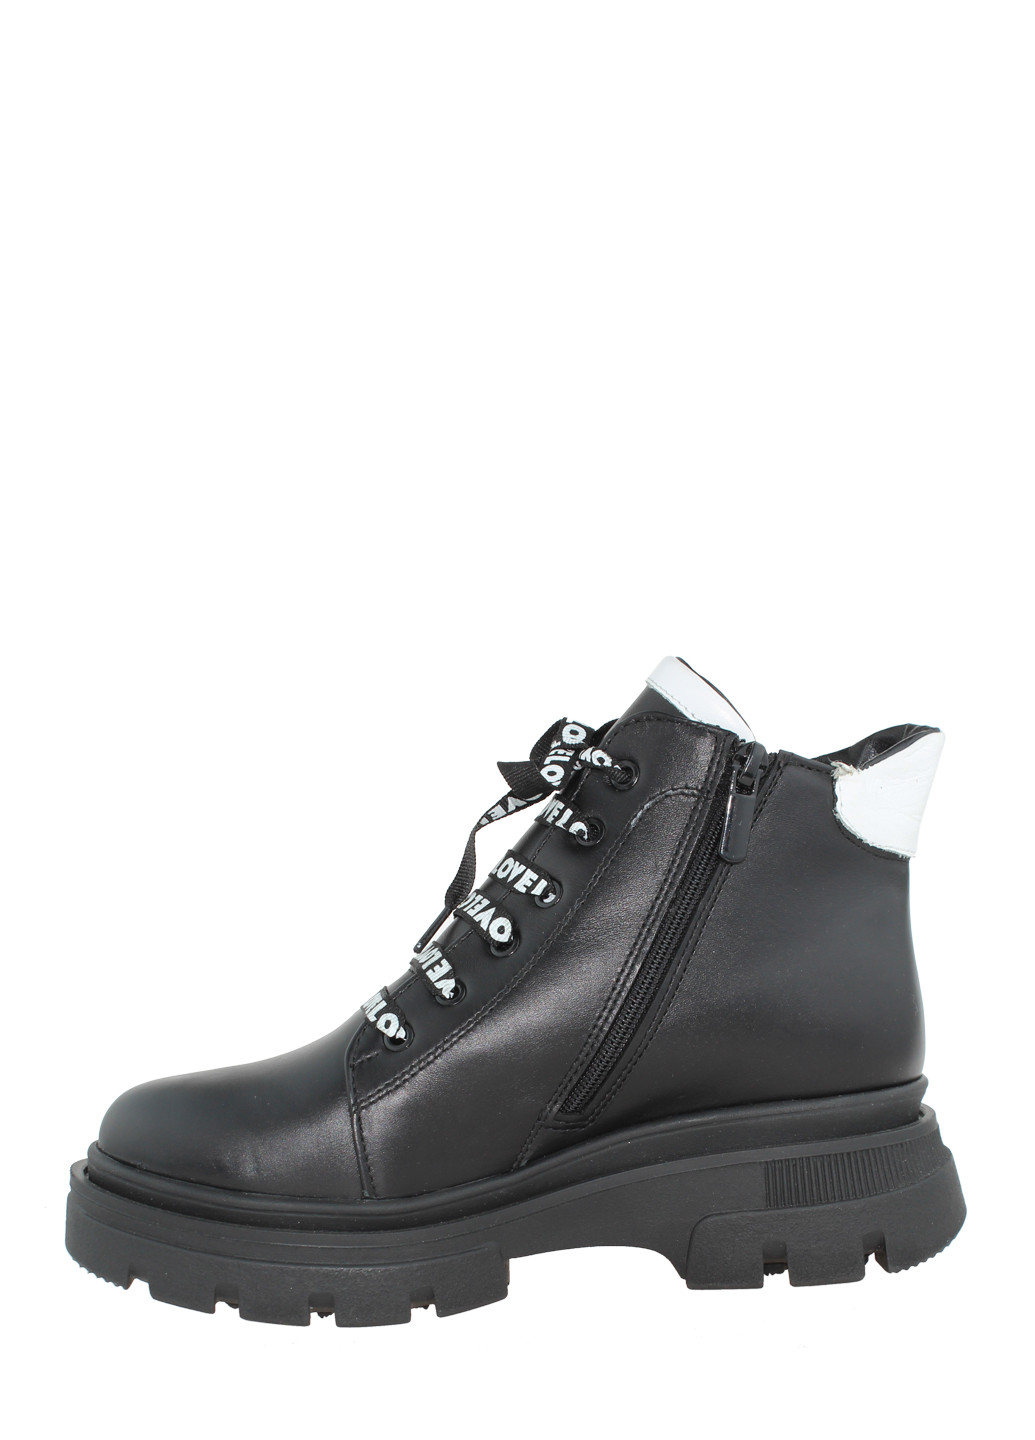 Зимние ботинки a-09 черный Alvista